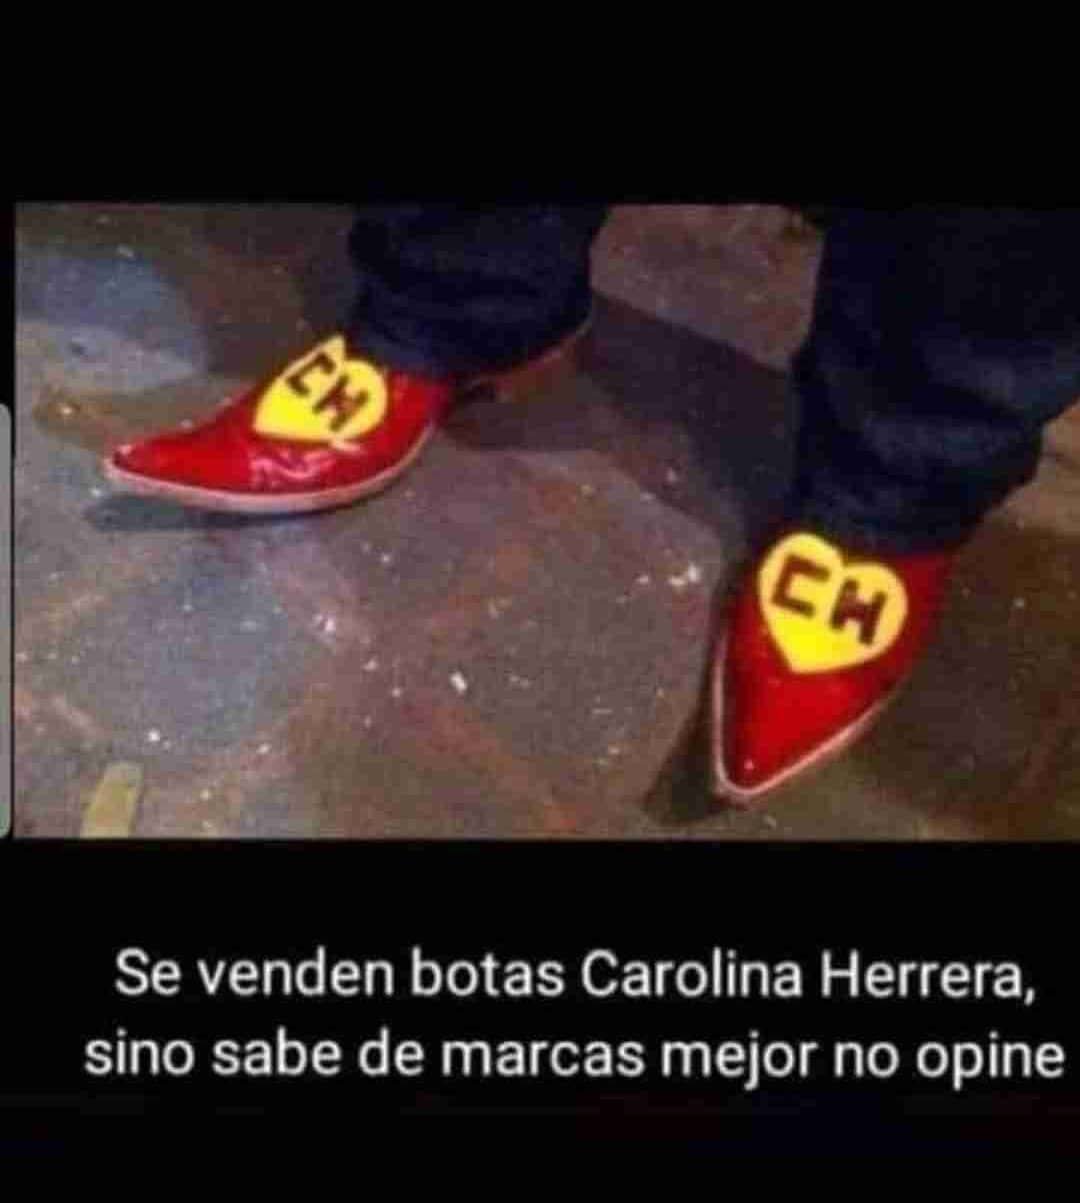 Se venden botas Carolina Herrera, sino sabe de marcas mejor no opine.